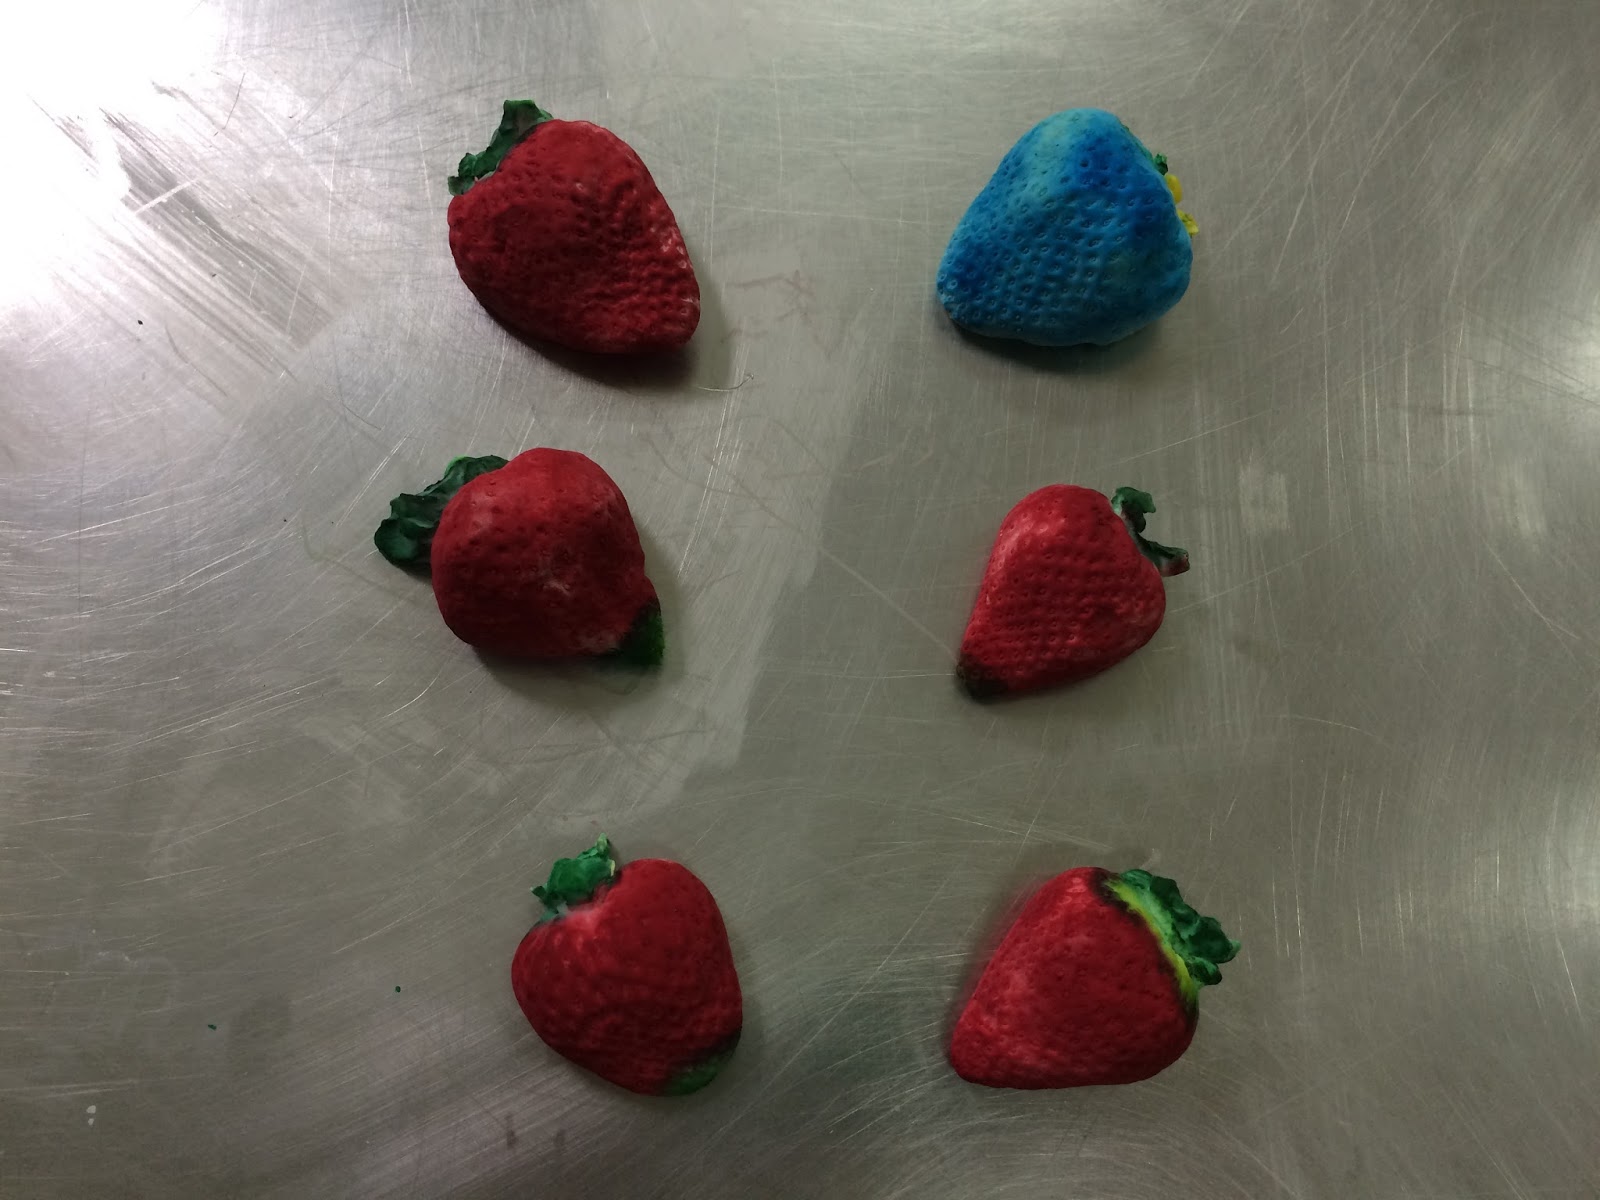 plastercaststrawberries.JPG